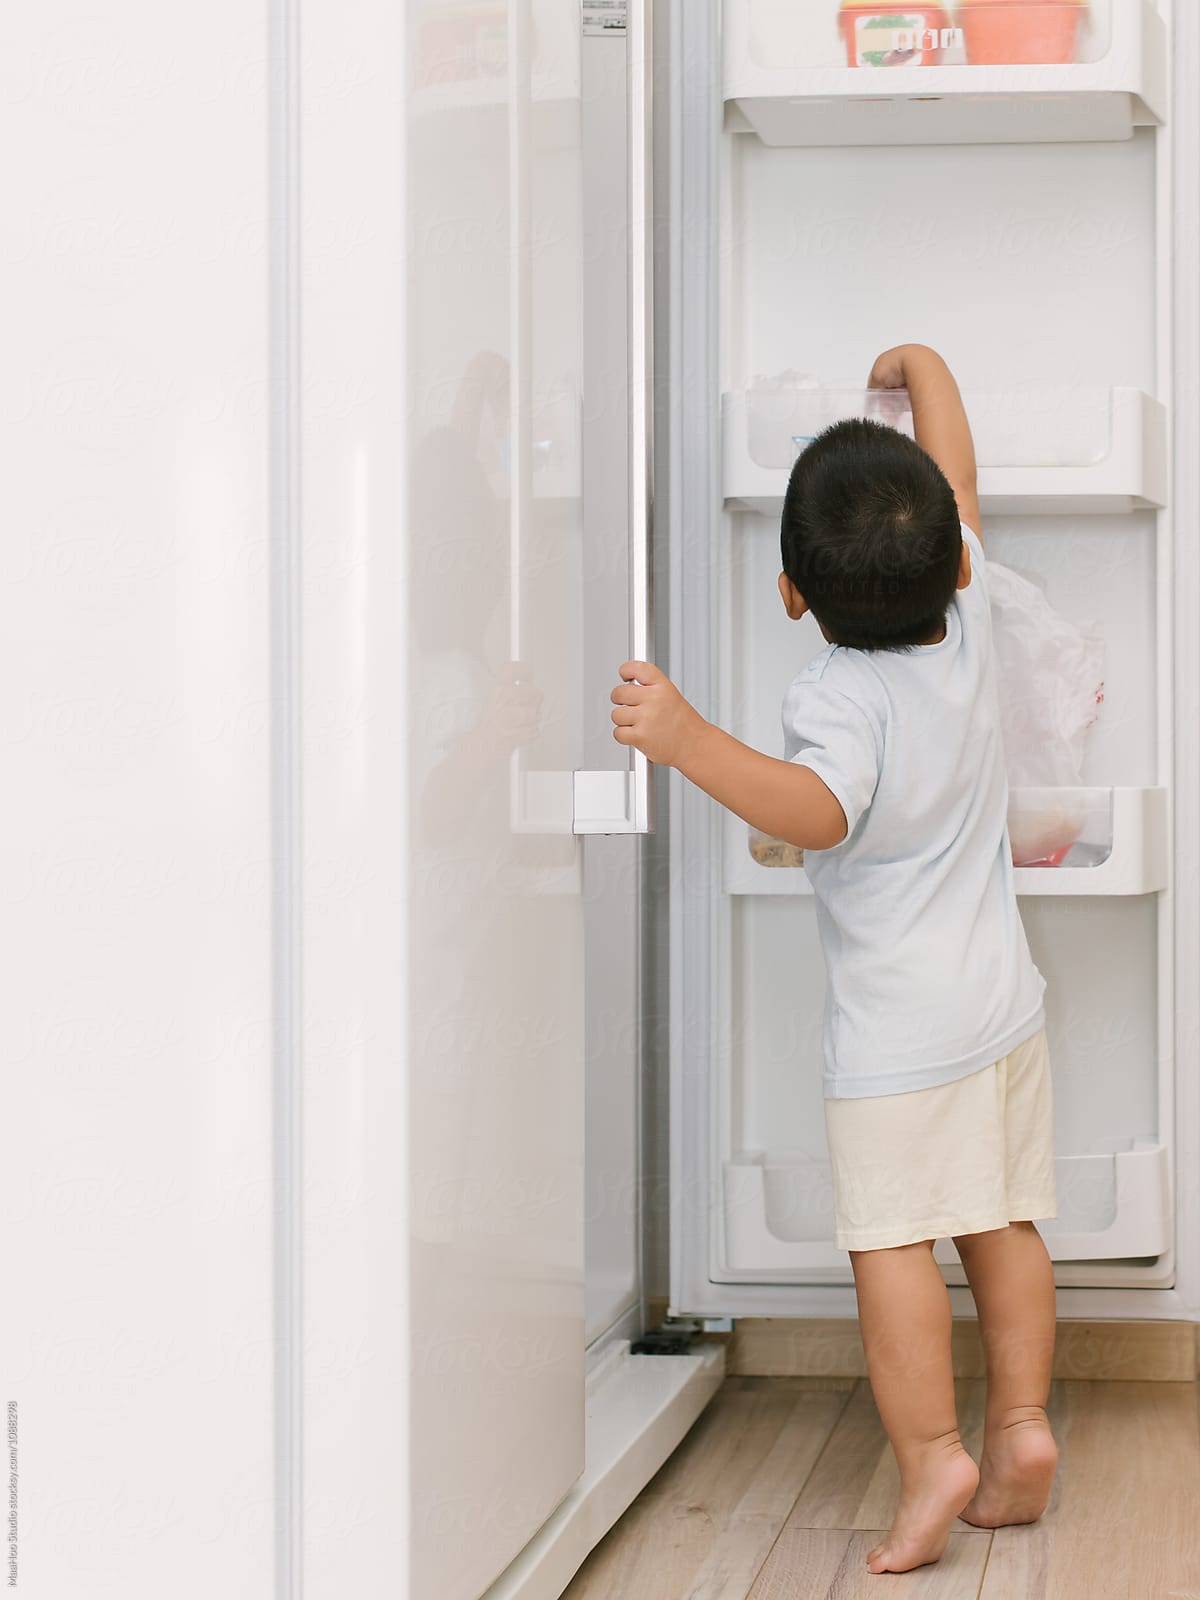 Little boy opening fridge